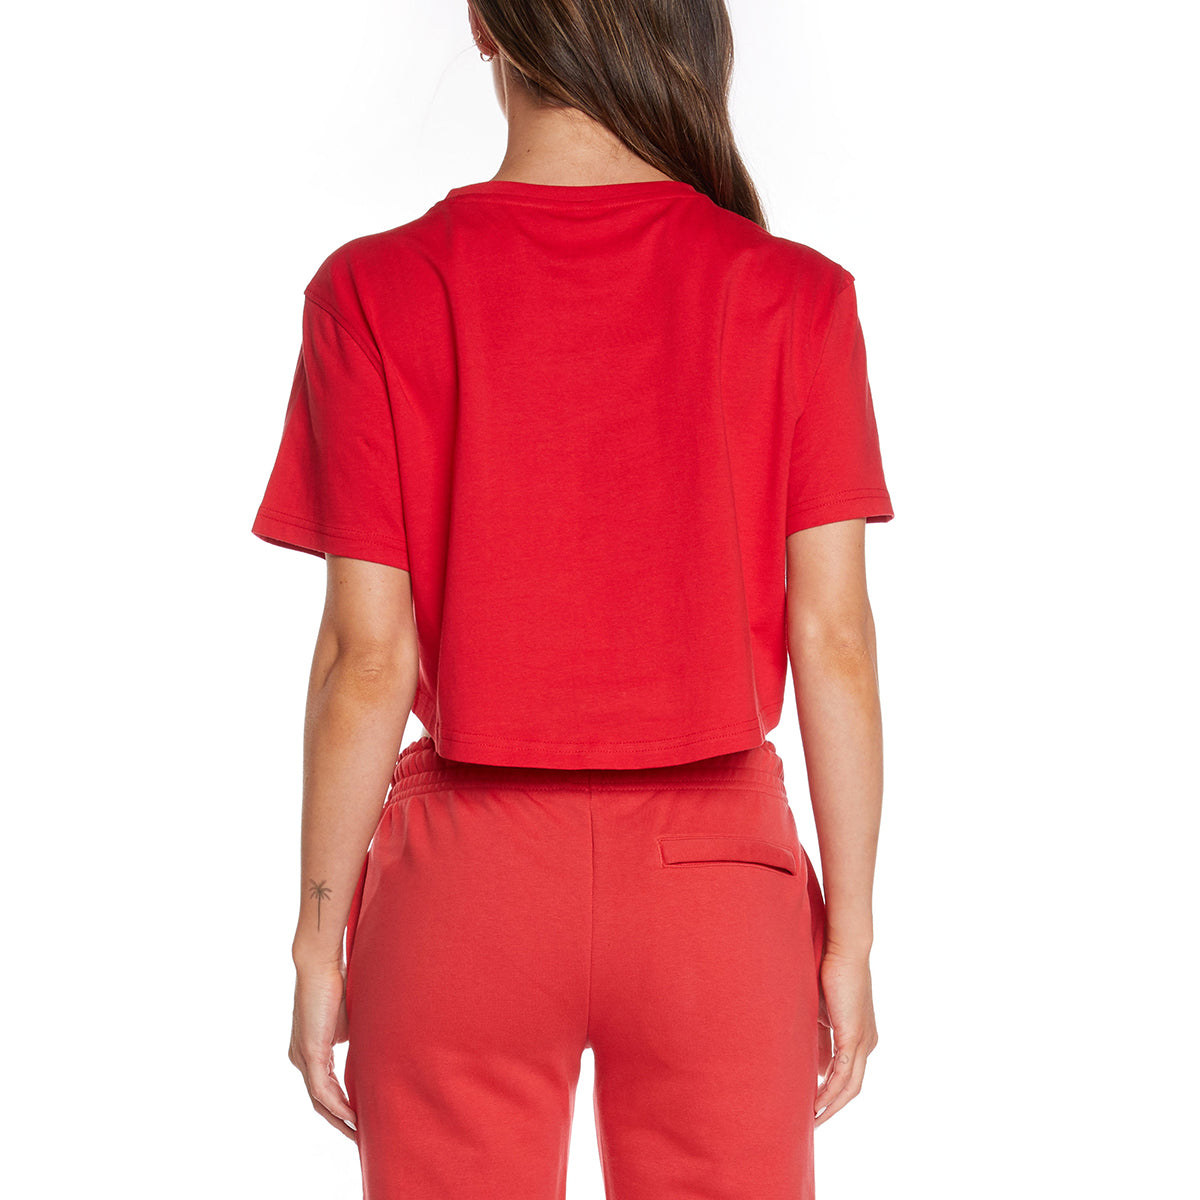 T-shirt Kalisz Rouge femme - Image 2